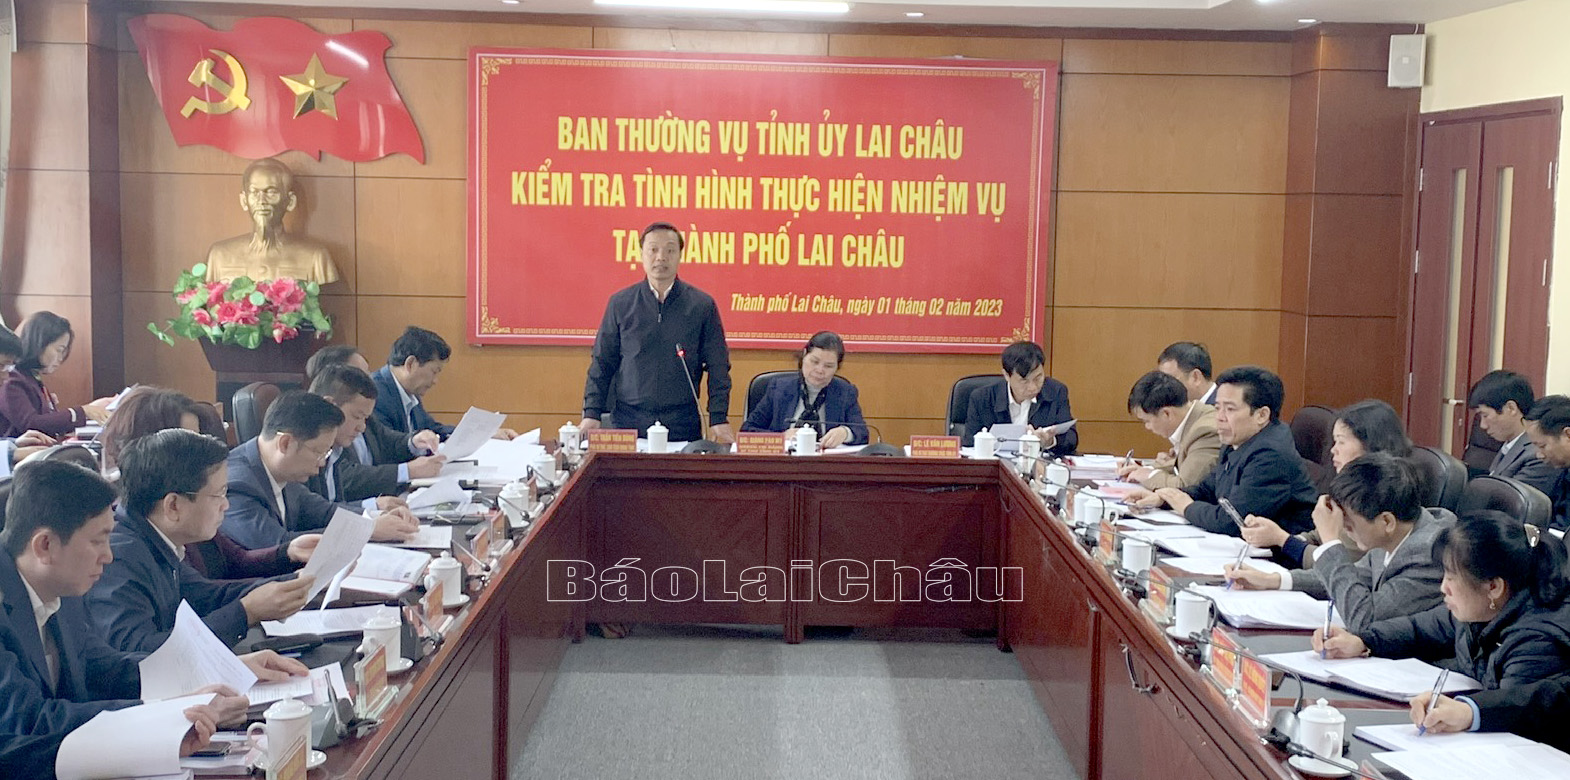 Đồng chí Trần Tiến Dũng - Phó Bí thư Tỉnh ủy, Chủ tịch UBND tỉnh phát biểu tại buổi làm việc.